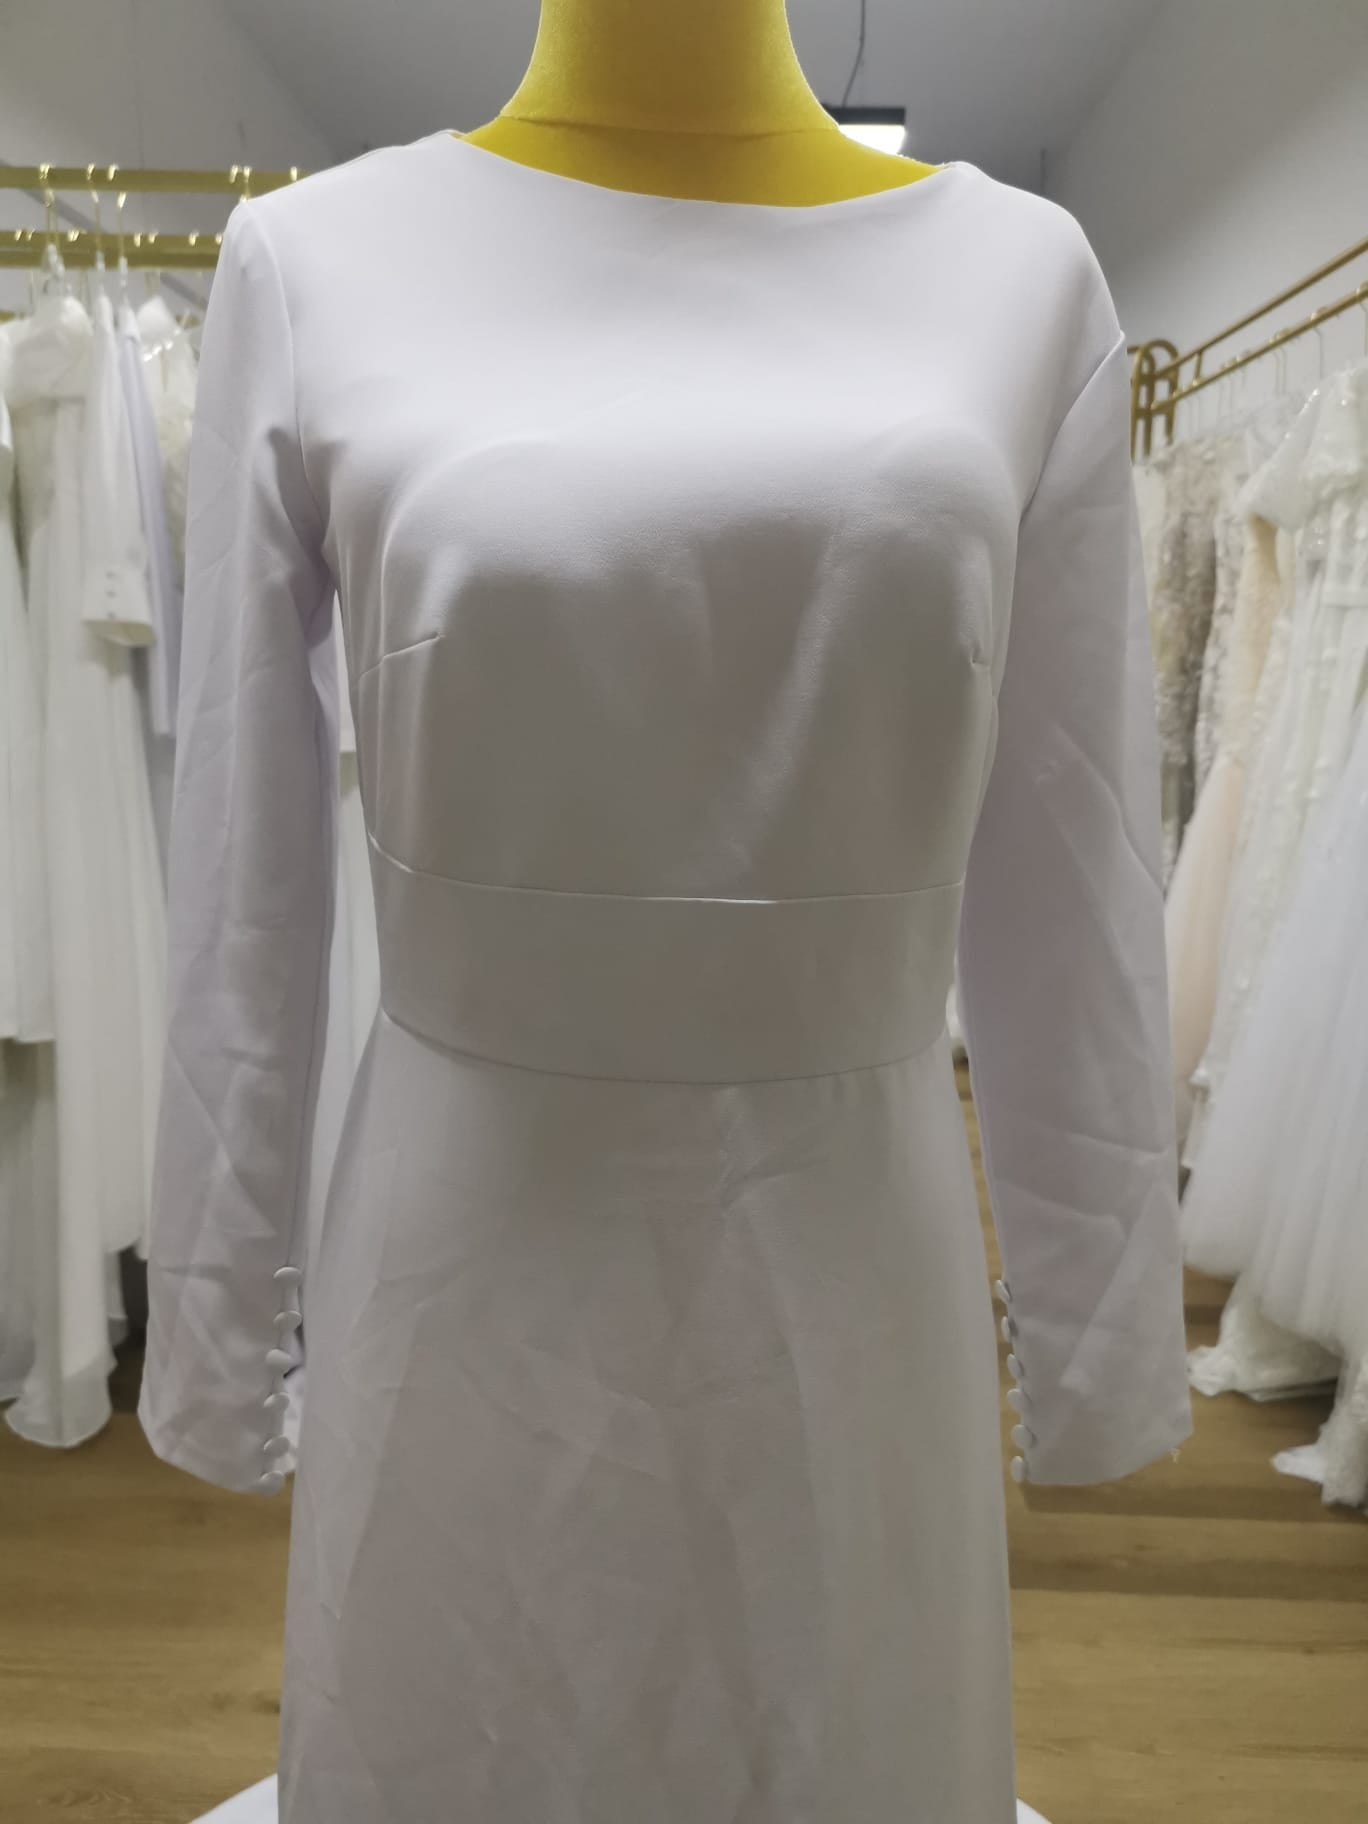 Wedding Bridal Gown R-0297